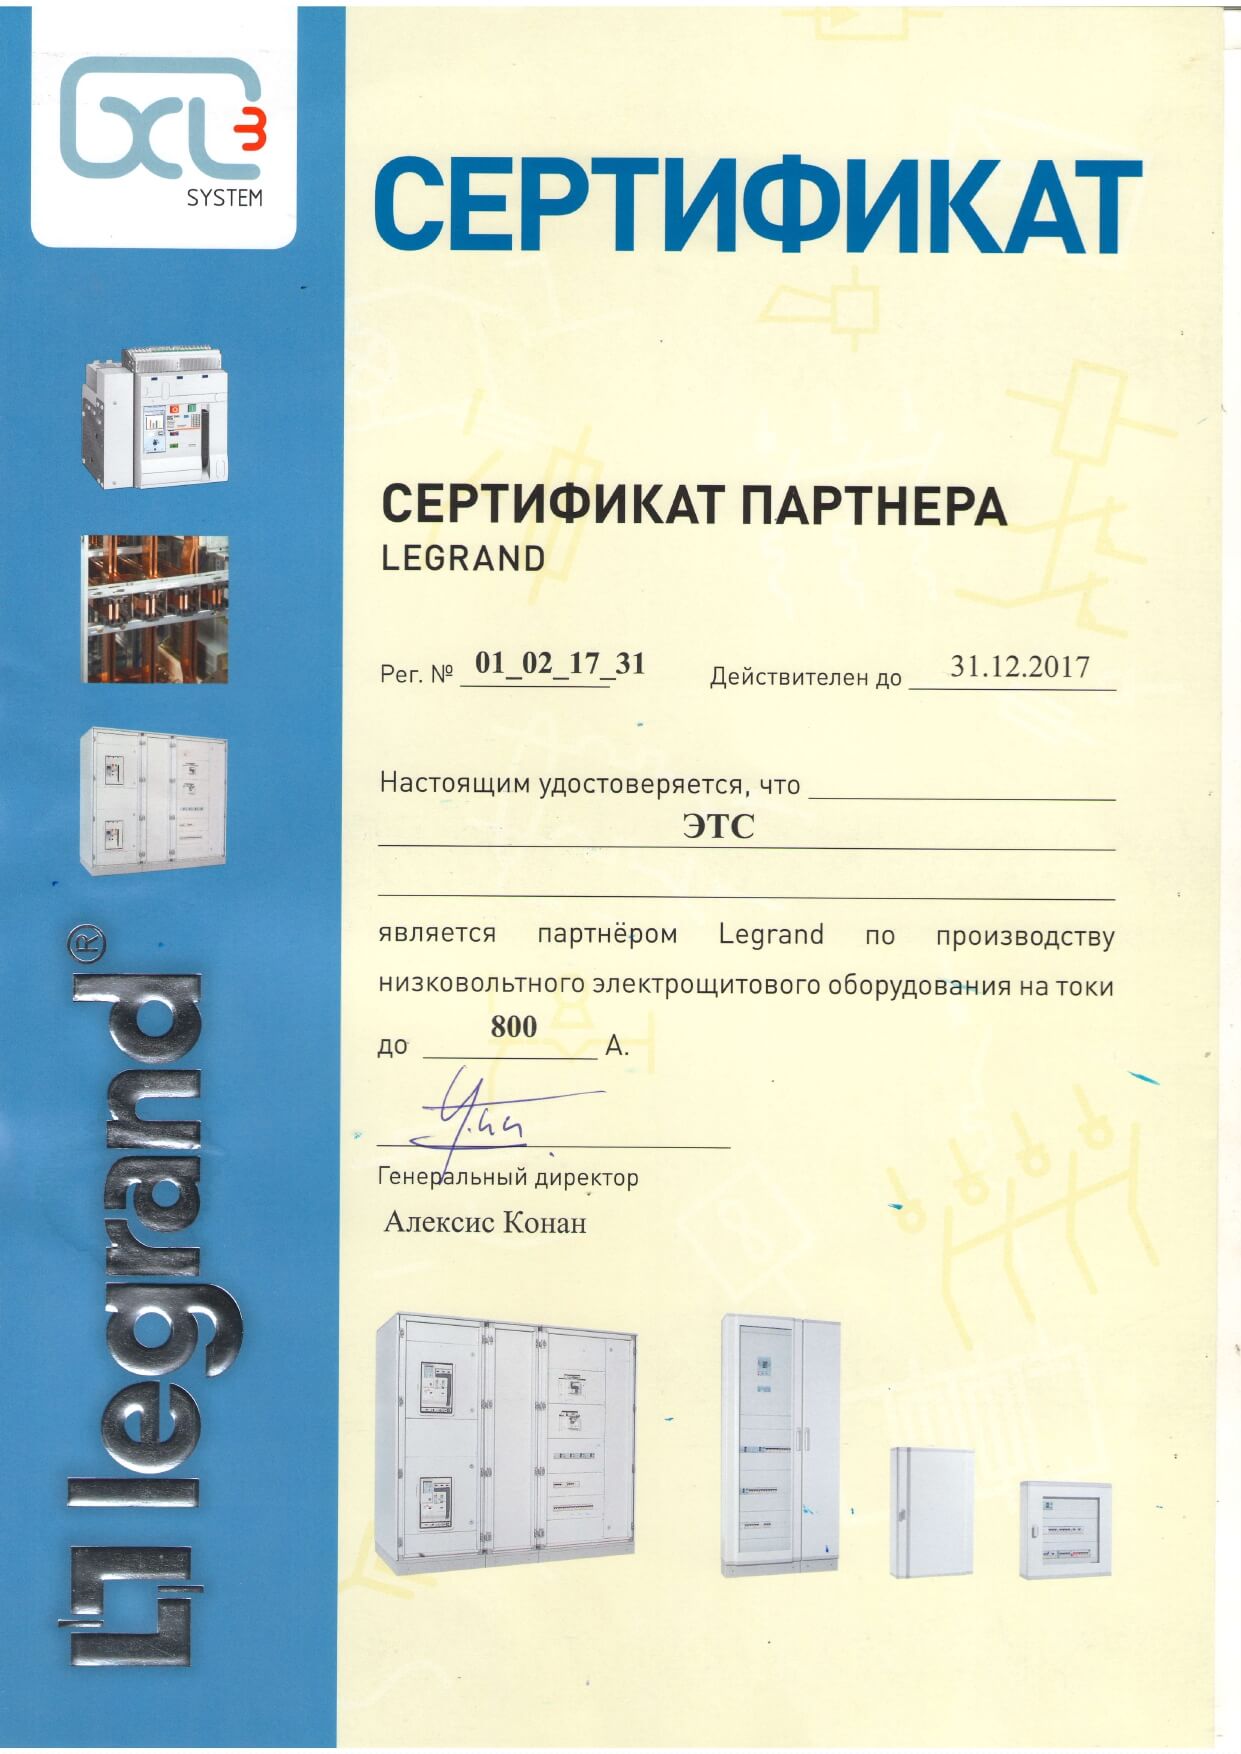 Сертификат партнера LEGRAND